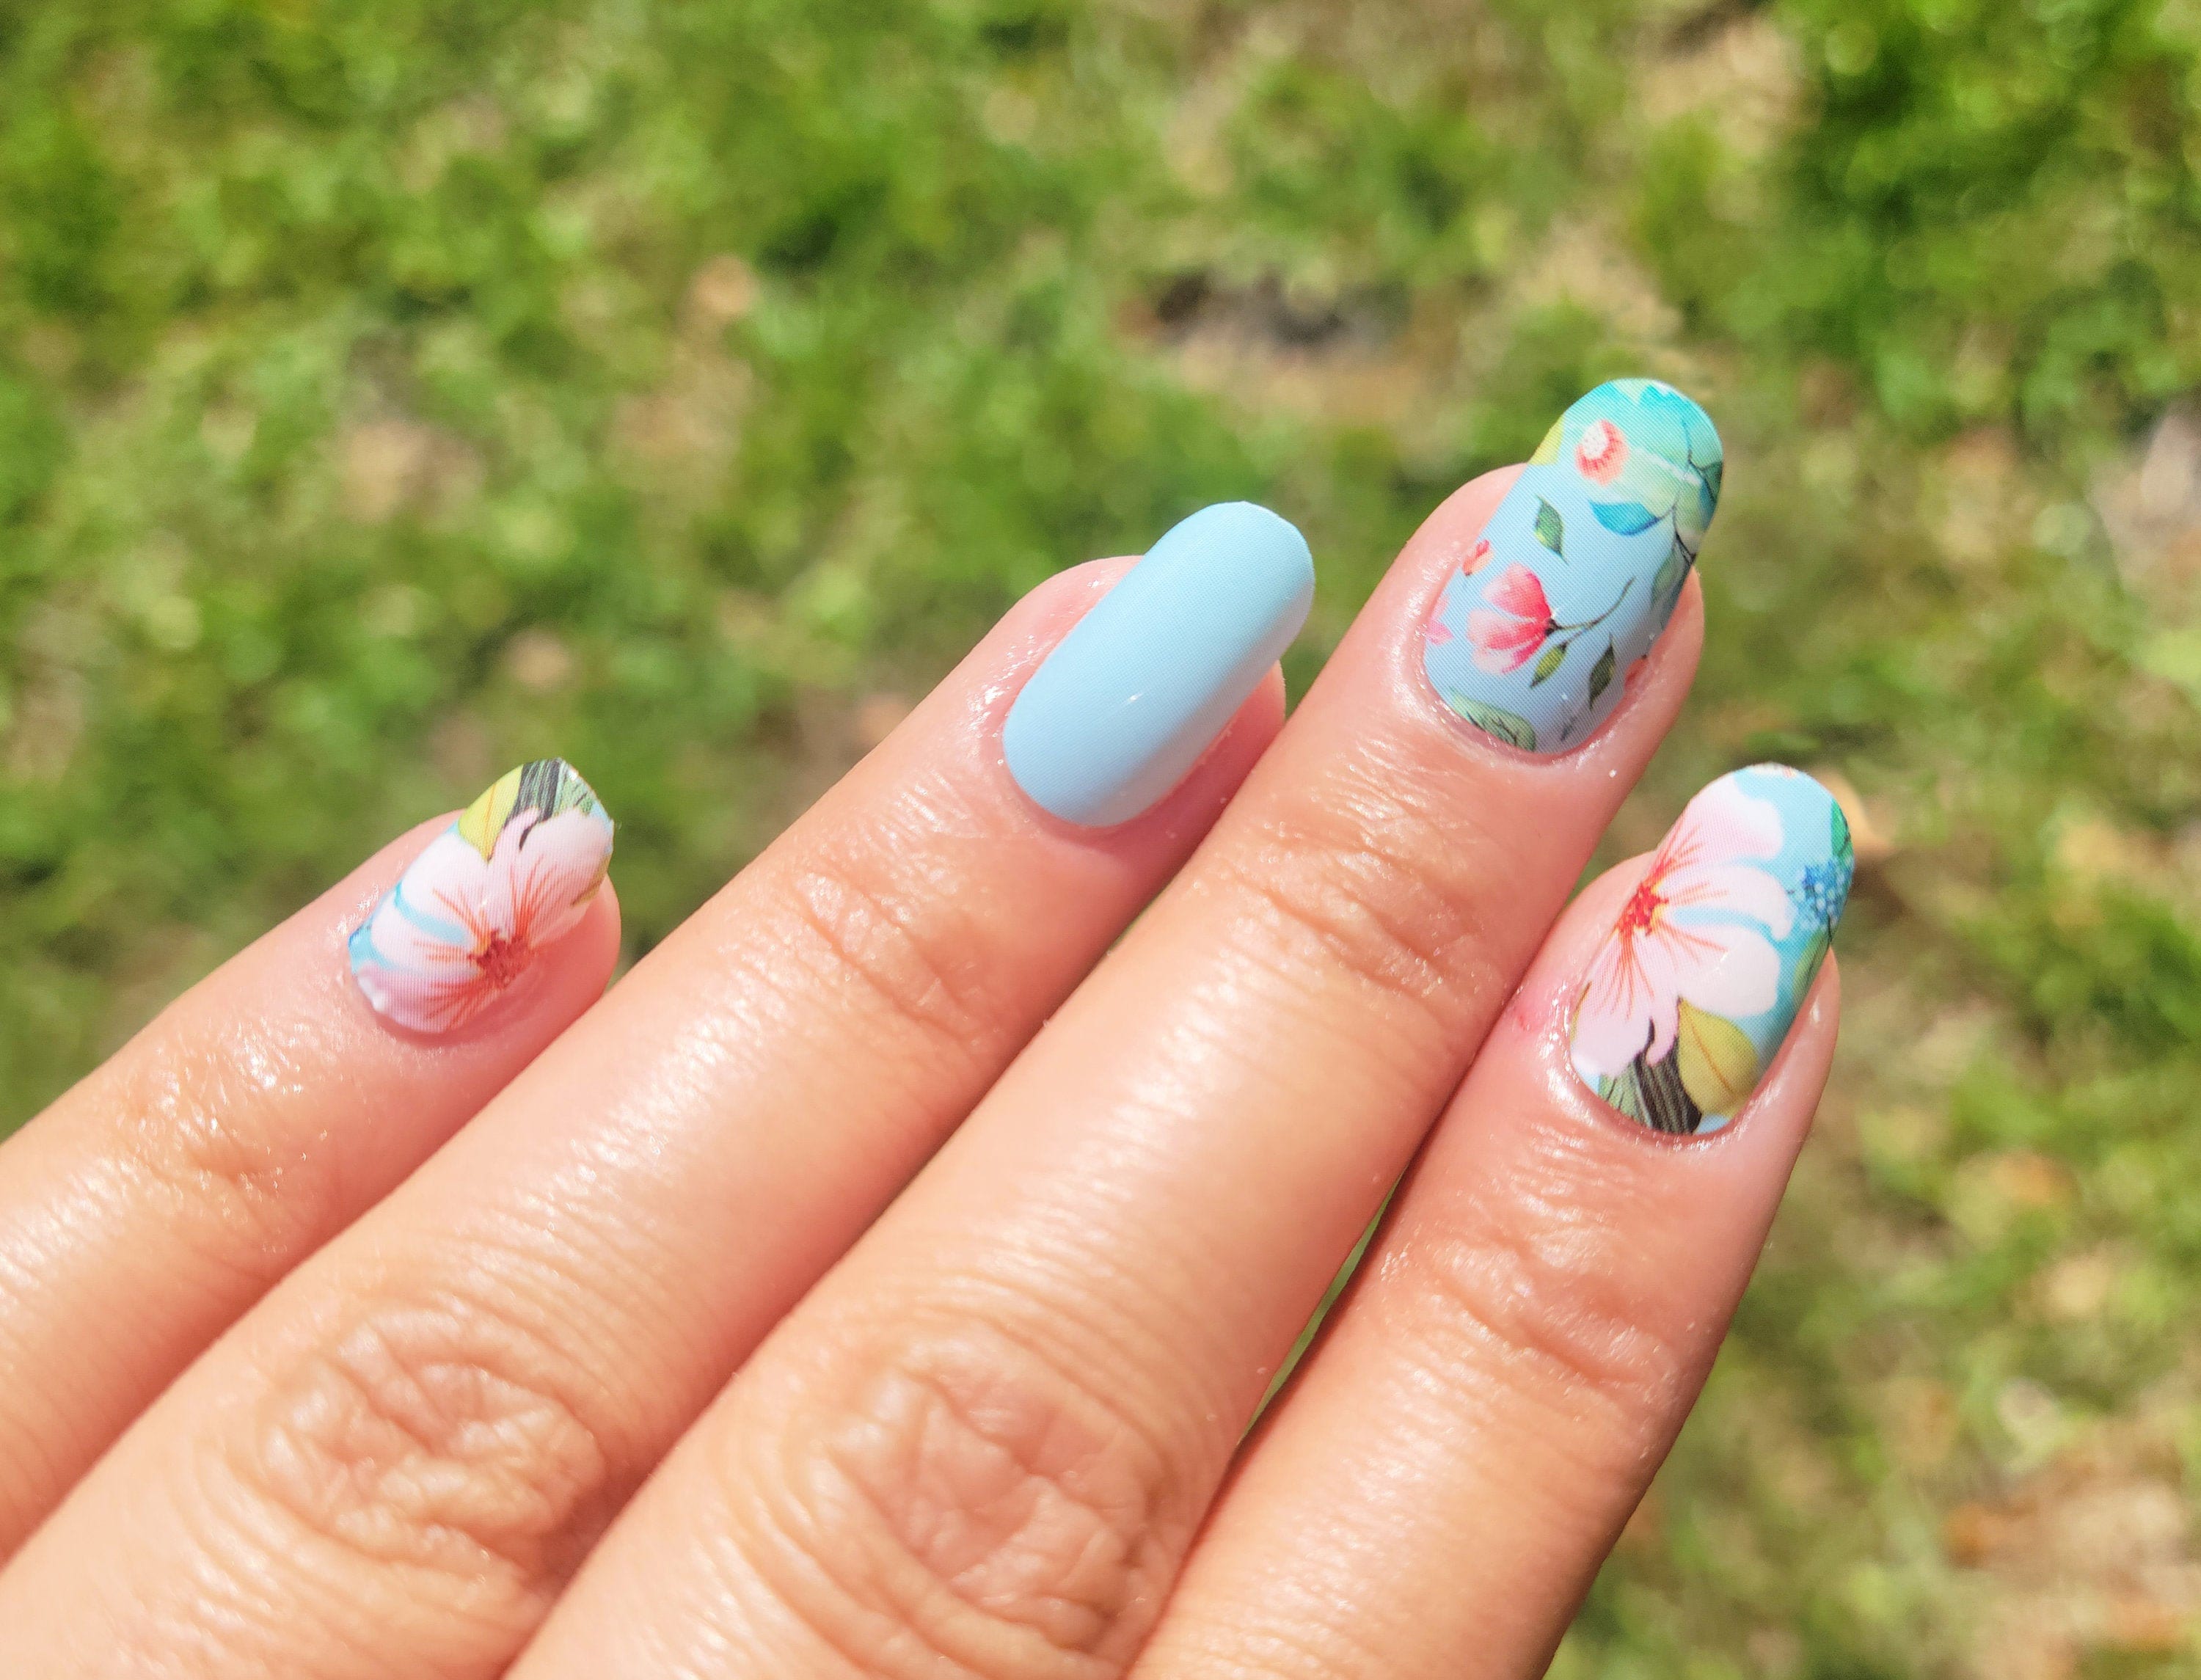 Aloha Nail Art Water Decals Holiday Nail Art - Etsy | Disney acrylic nails,  Pretty nail art designs, Disney nails